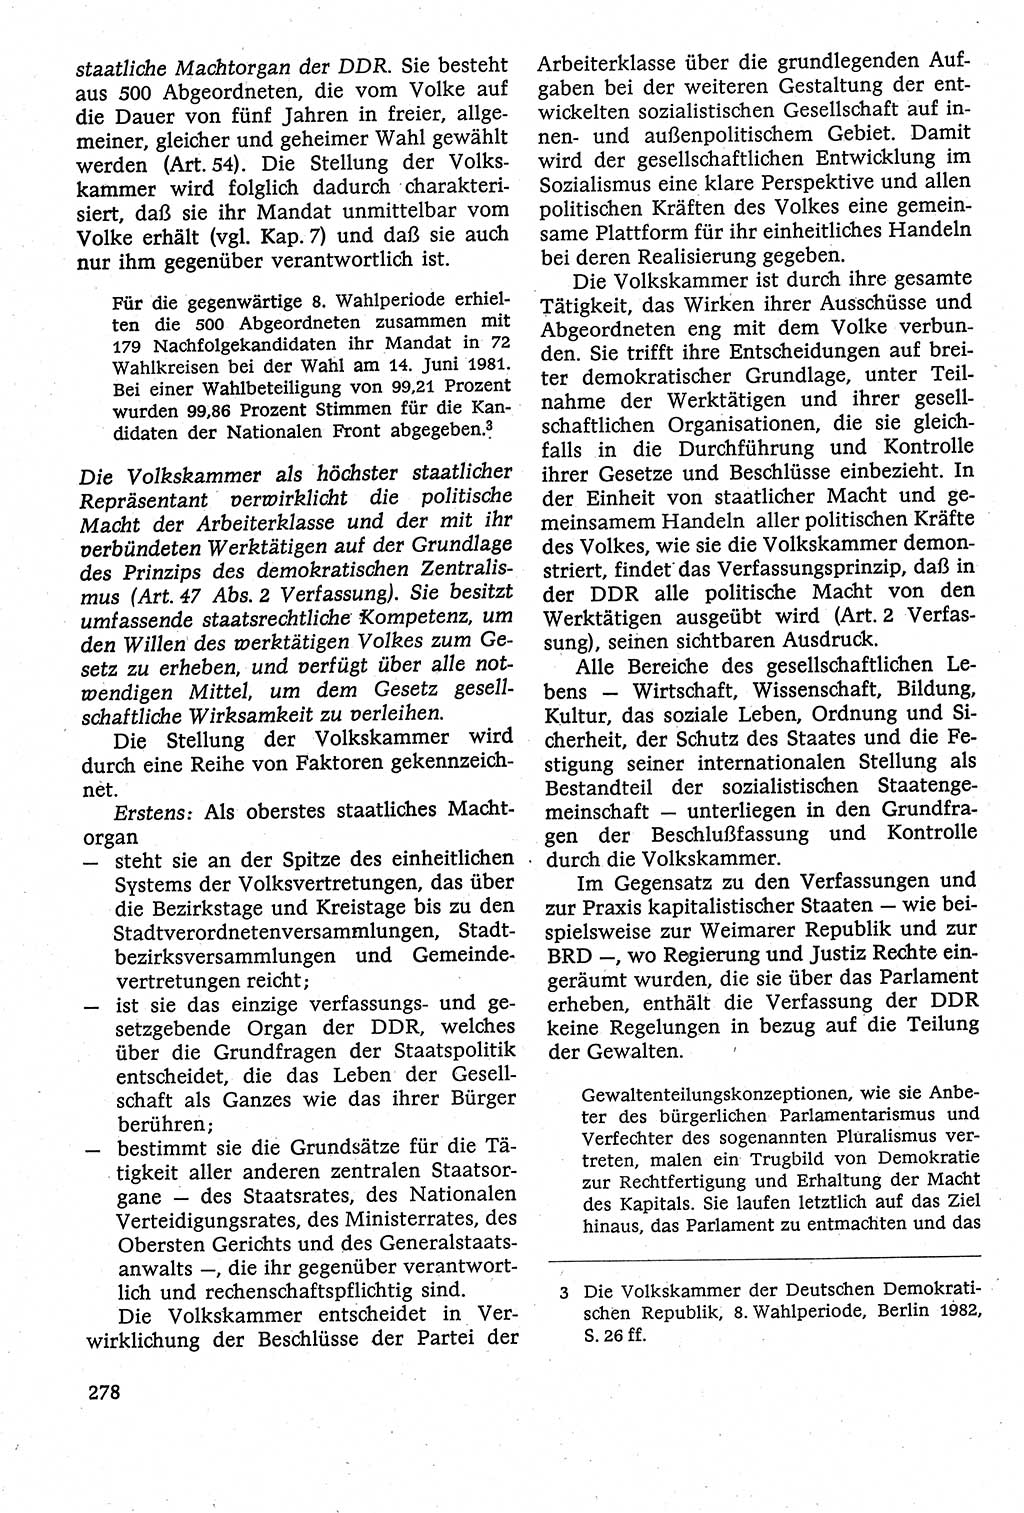 Staatsrecht der DDR [Deutsche Demokratische Republik (DDR)], Lehrbuch 1984, Seite 278 (St.-R. DDR Lb. 1984, S. 278)